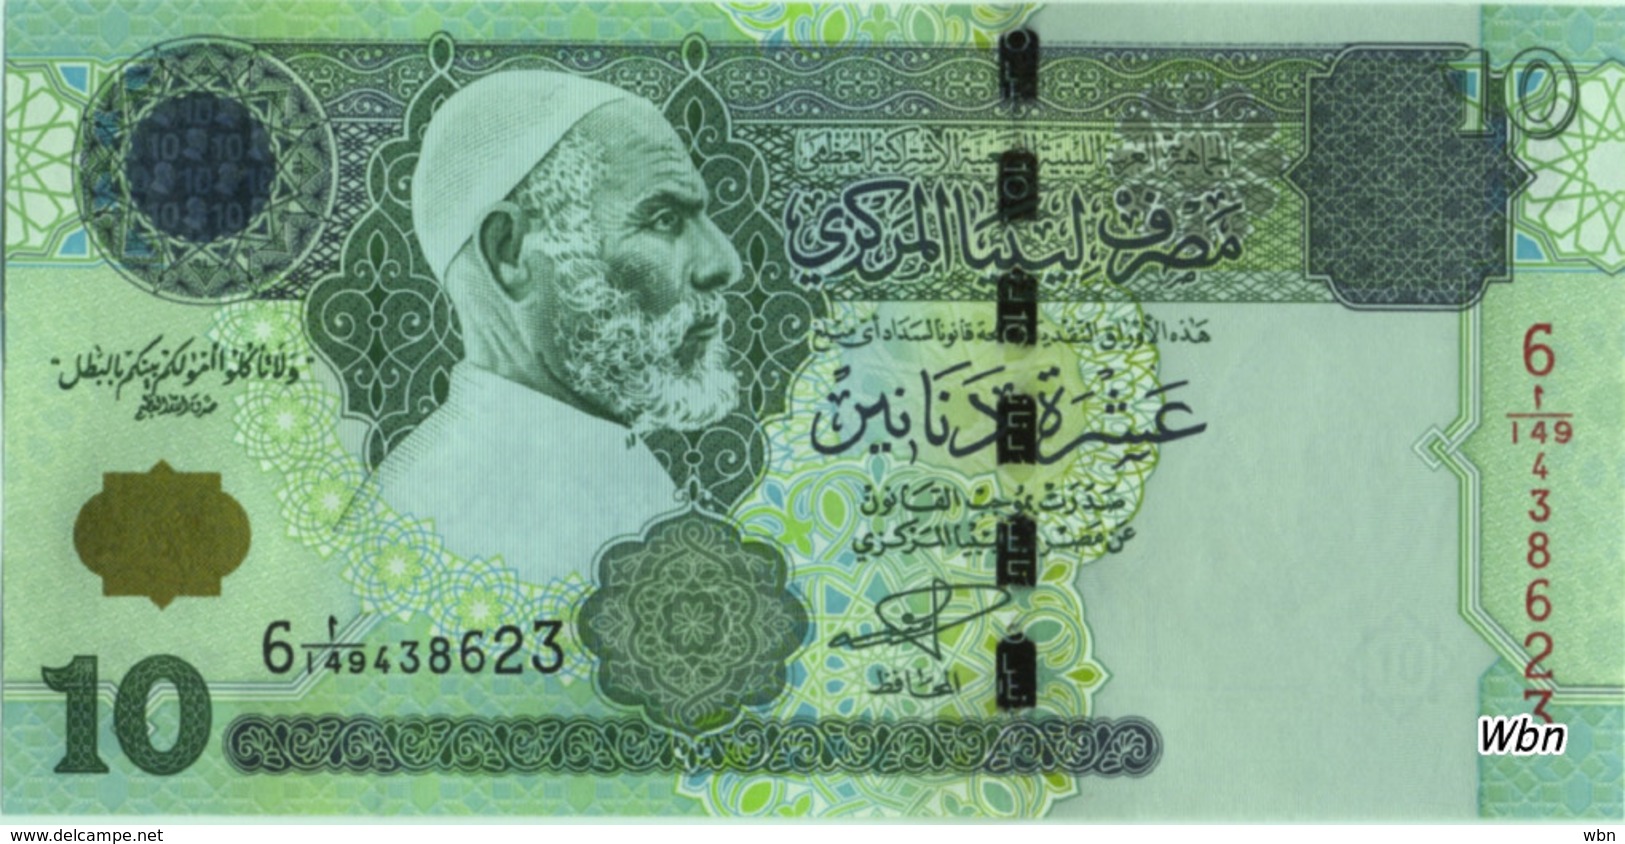 Libya 10 Dinars (P70) 2004 Sign 9 -UNC- - Libië